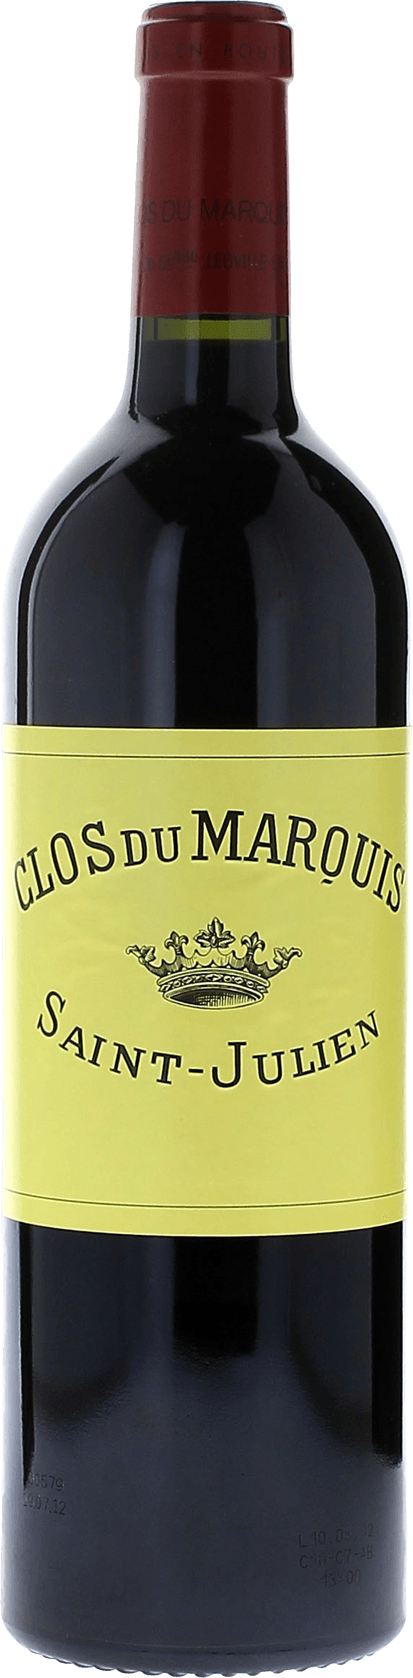 Clos du marquis 1996 2me vin de LEOVILLE LAS CASES Saint-Julien, Bordeaux rouge